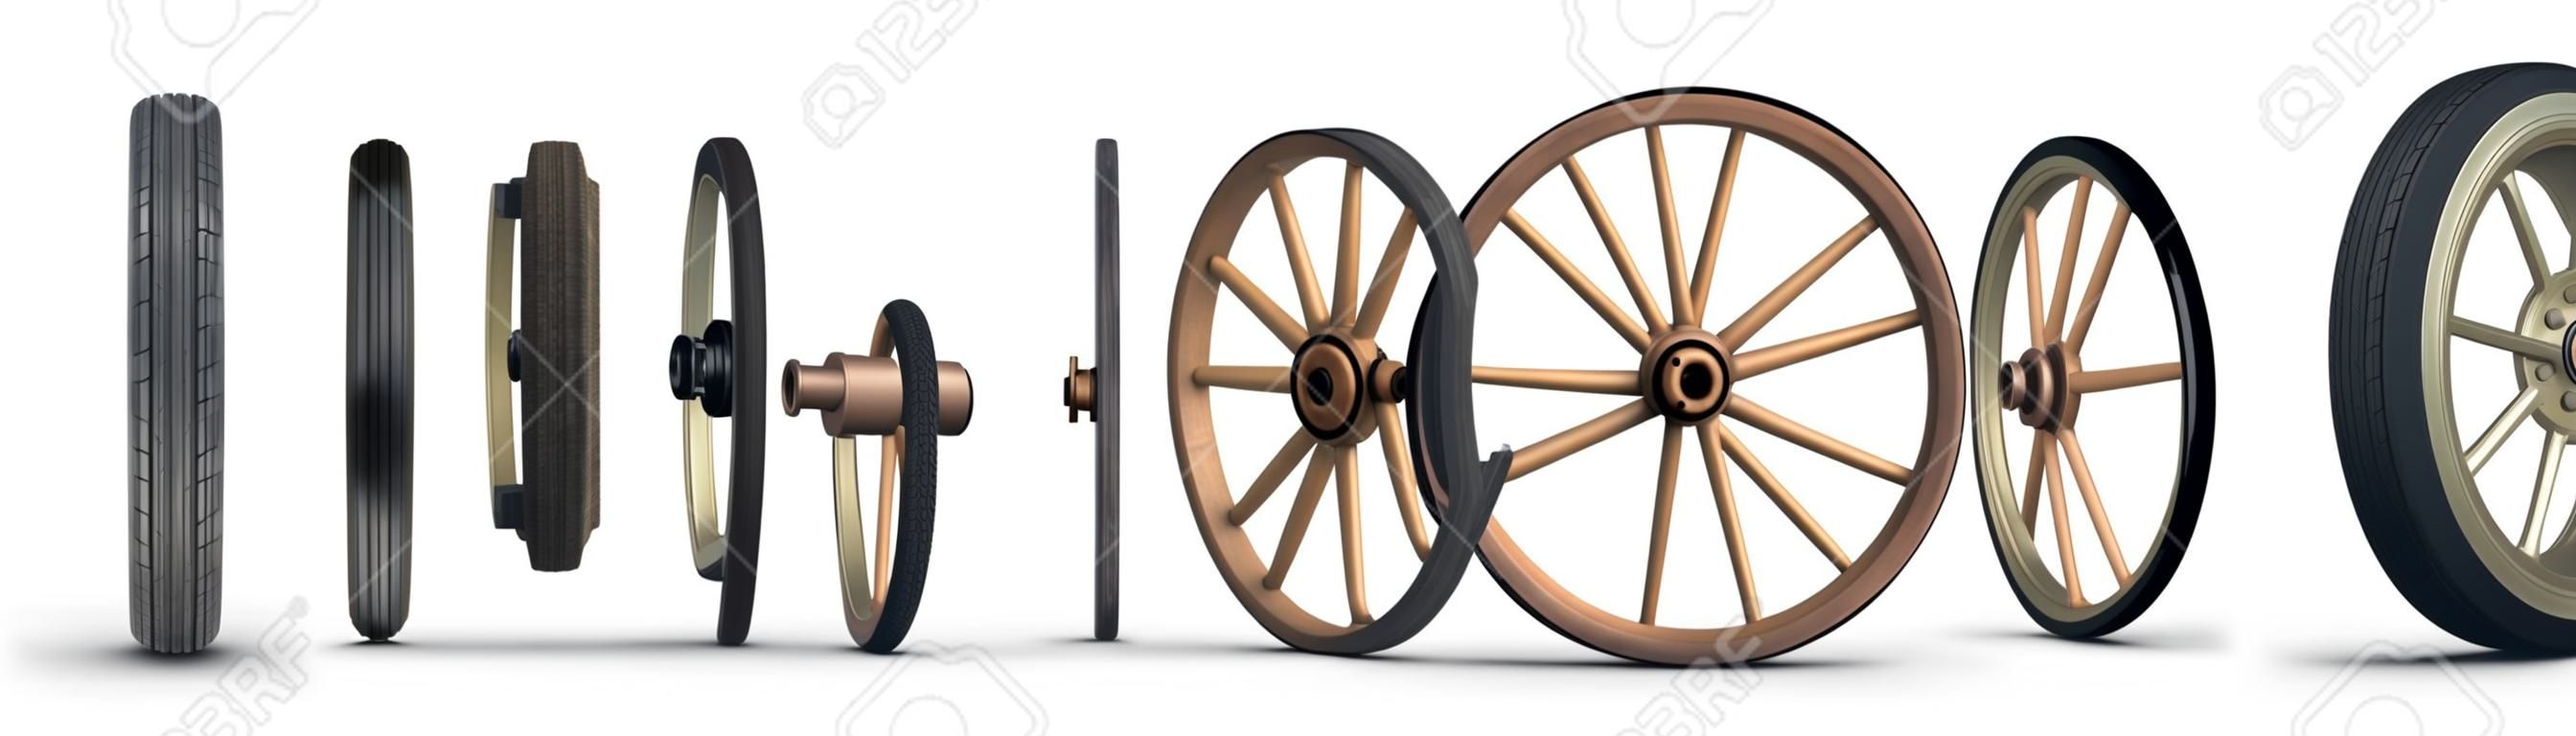 該圖顯示了從石輪開始到鋼帶子午線輪胎結束的車輪演變過程。射擊在白色背景。